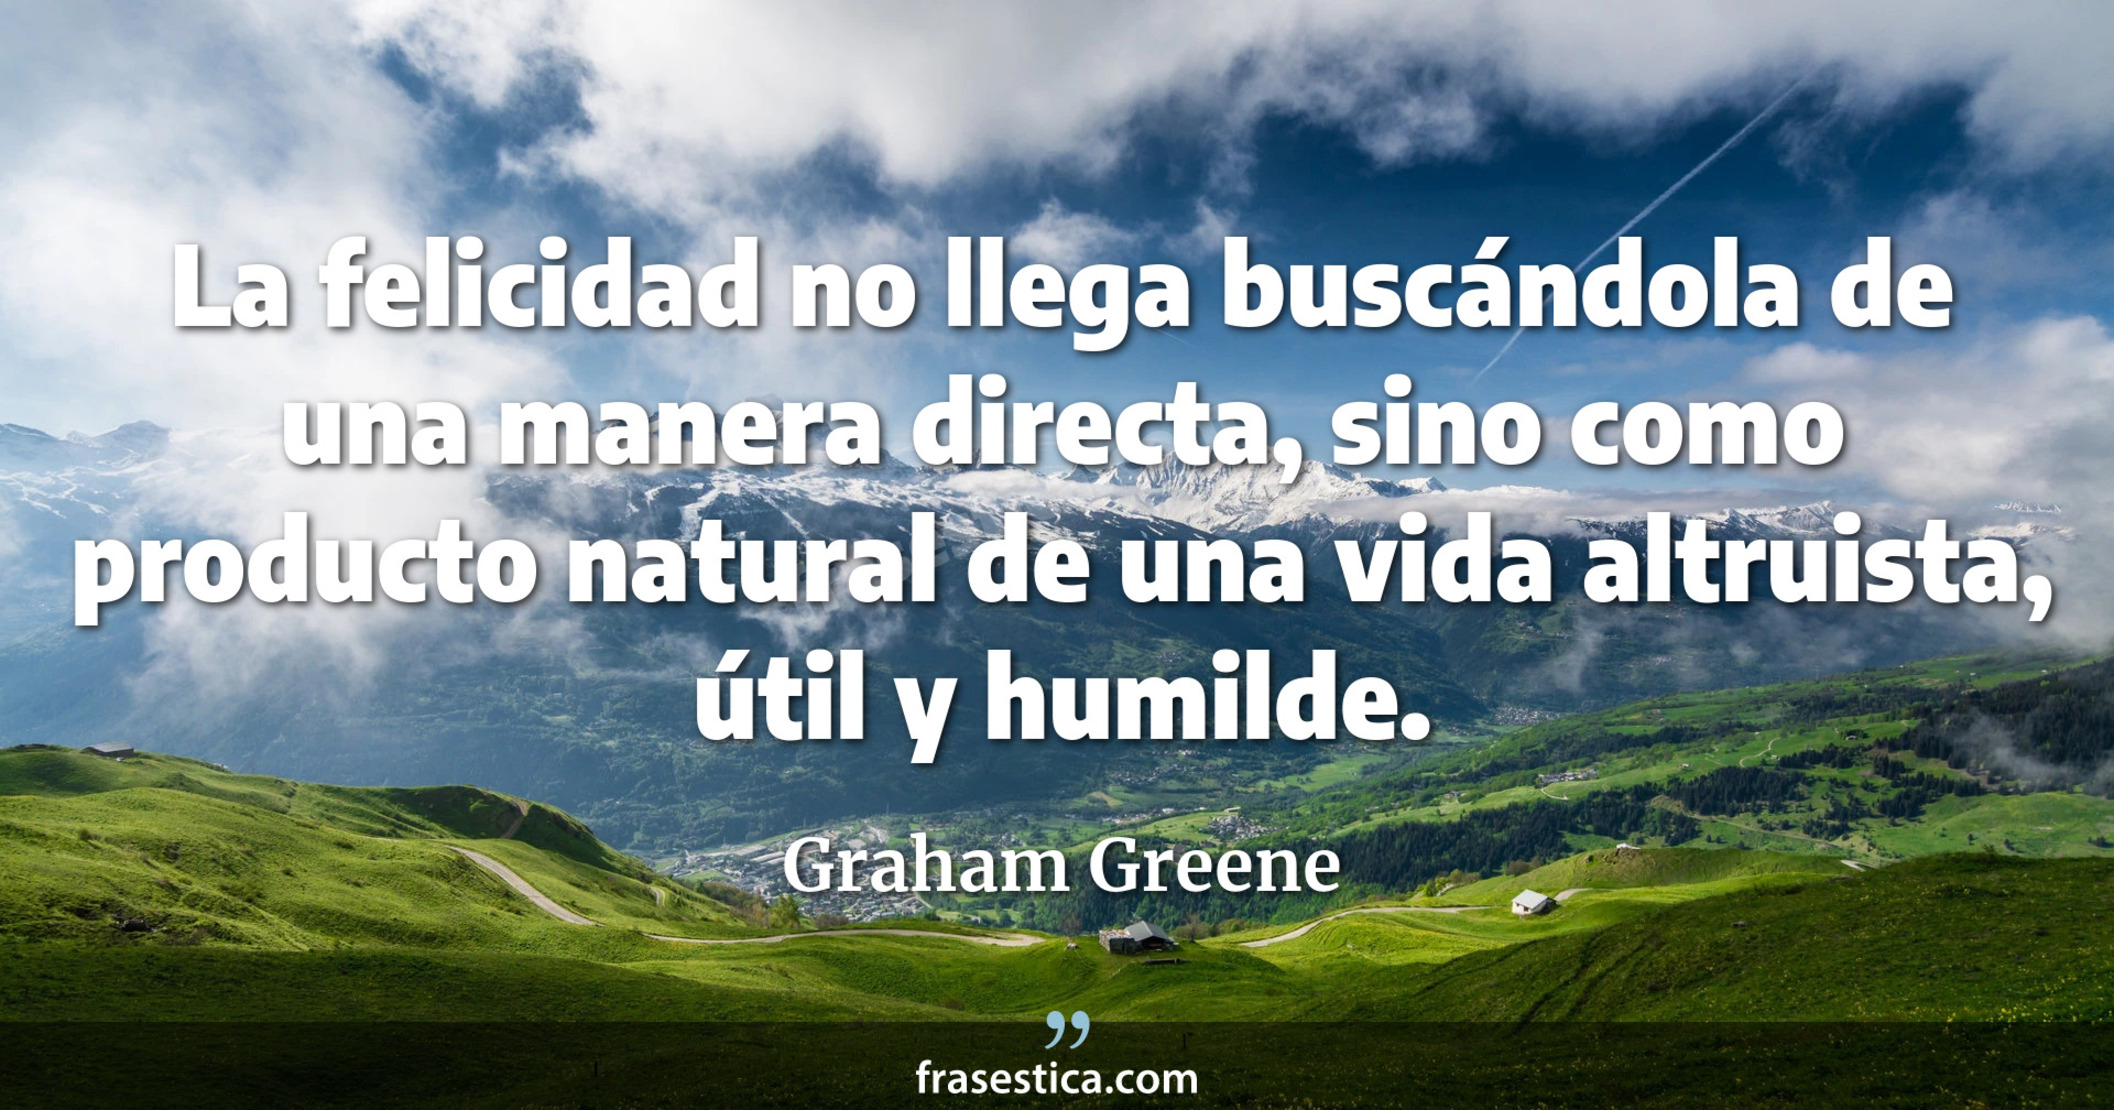 La felicidad no llega buscándola de una manera directa, sino como producto natural de una vida altruista, útil y humilde. - Graham Greene